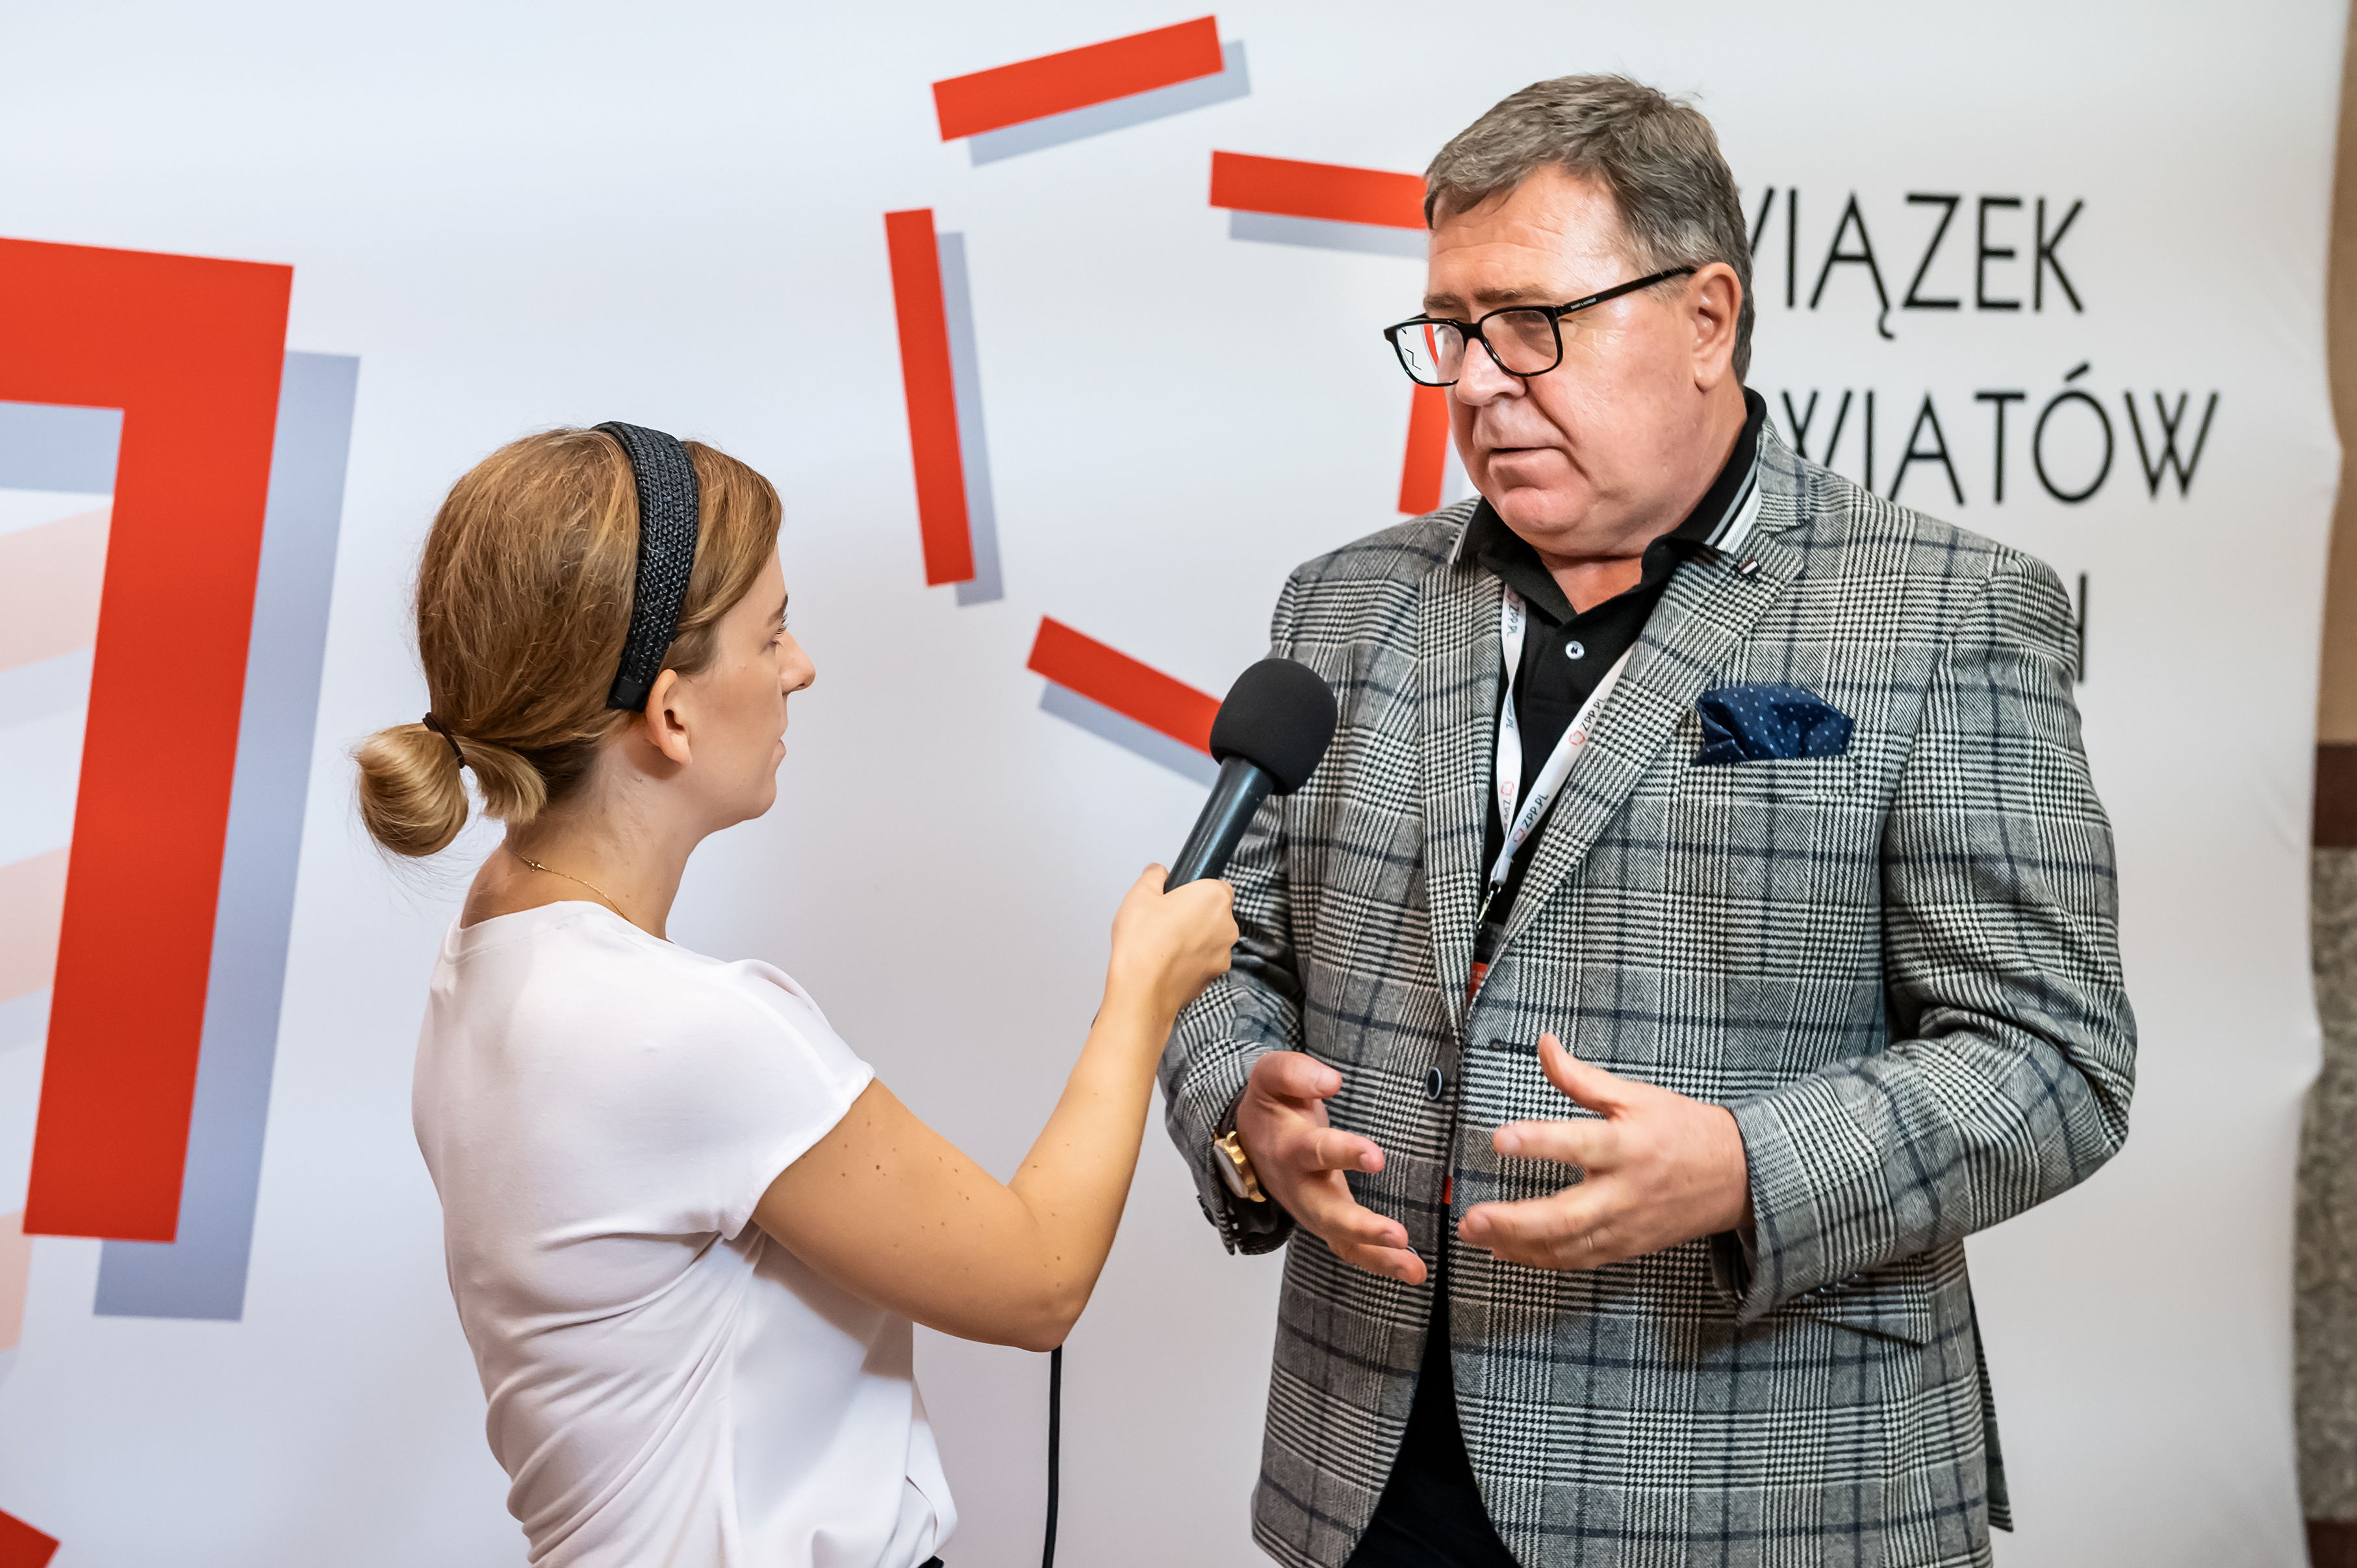 Wywiad TV z Wiceprezesem Zarządu ZPP Janem Grabkowskim podczas Zgromadzenia Ogólnego ZPP